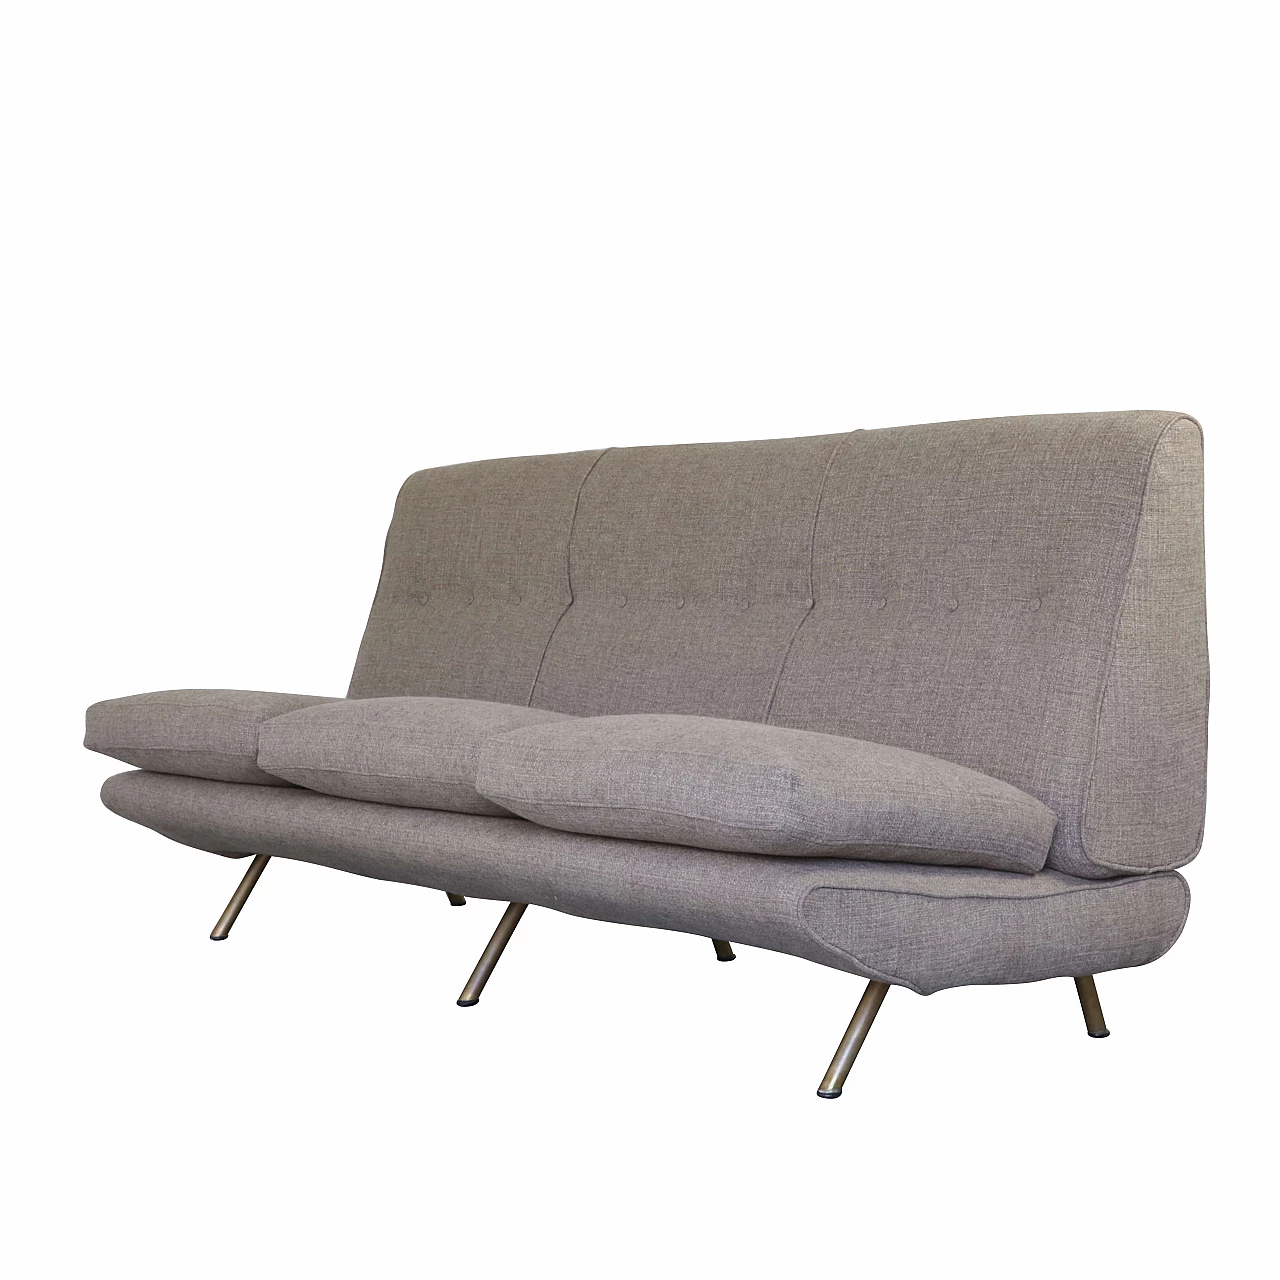 Triennale sofa by Marco Zanuso for Arflex, 1950s 1270274